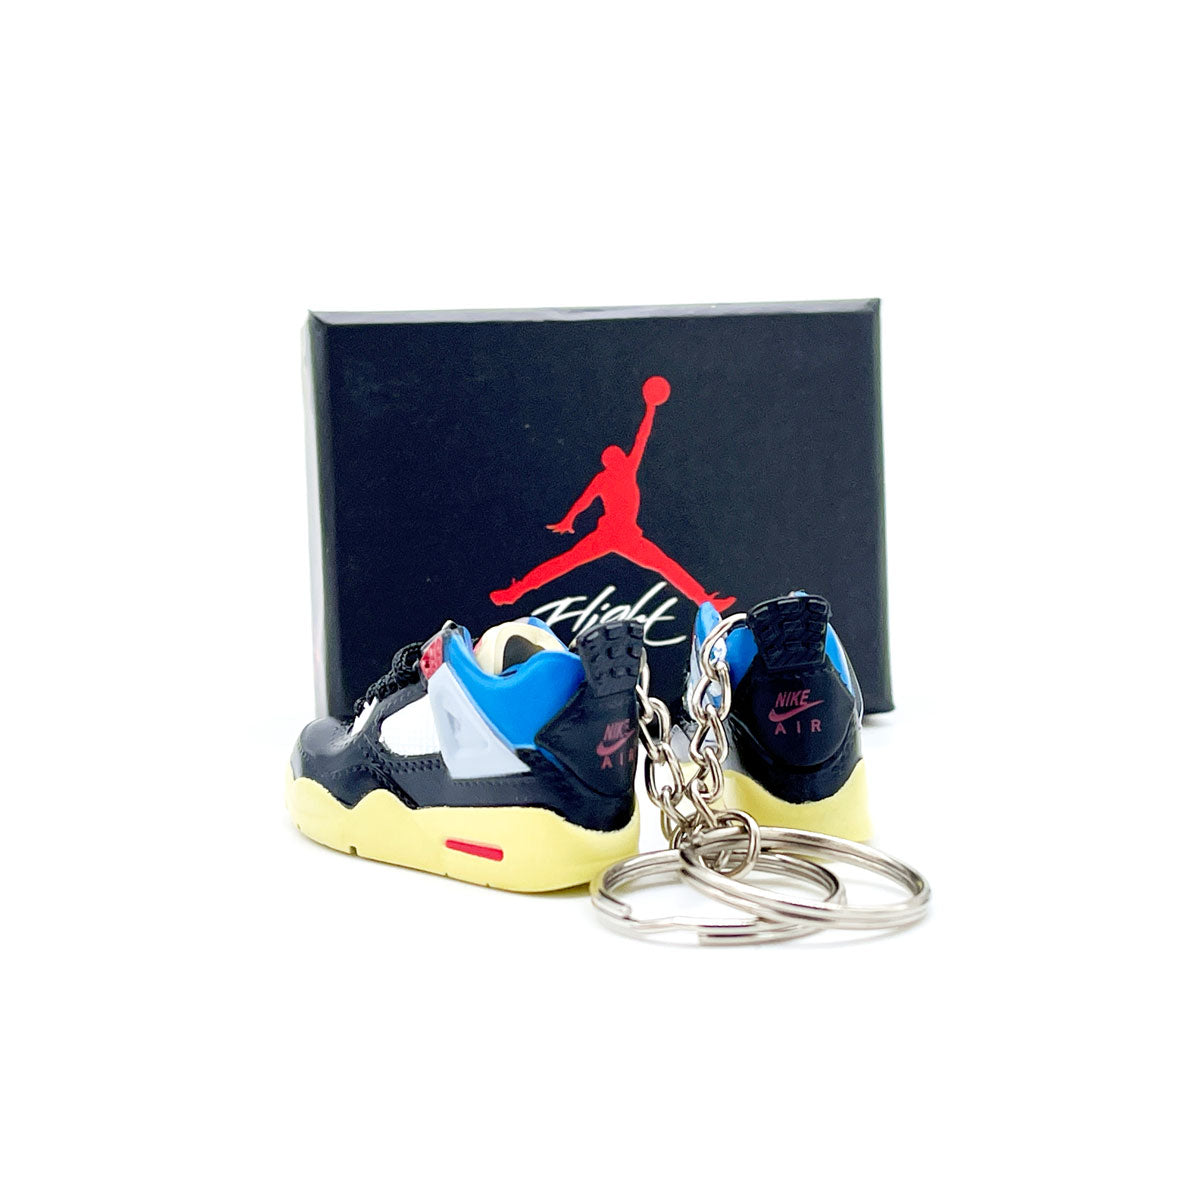 3D Sneaker Keychain- Air Jordan 4 Union Nior Pair